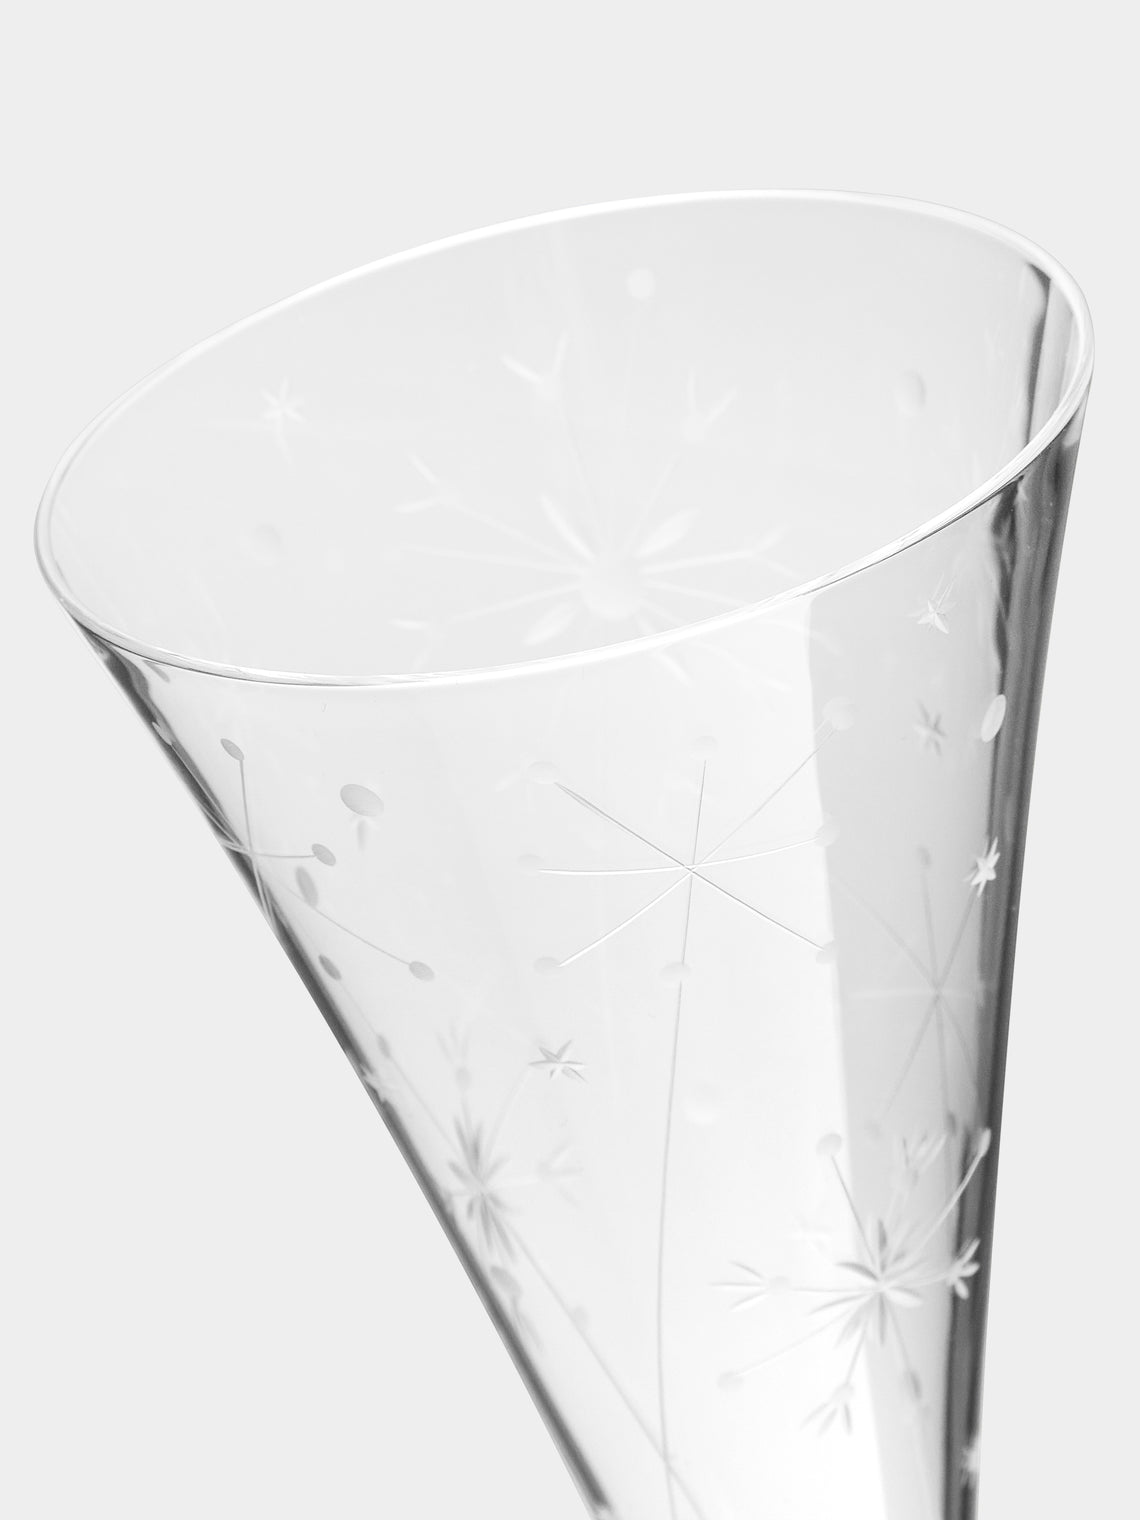 Artel - Fireworks Hand-Engraved Crystal Champagne Flute -  - ABASK